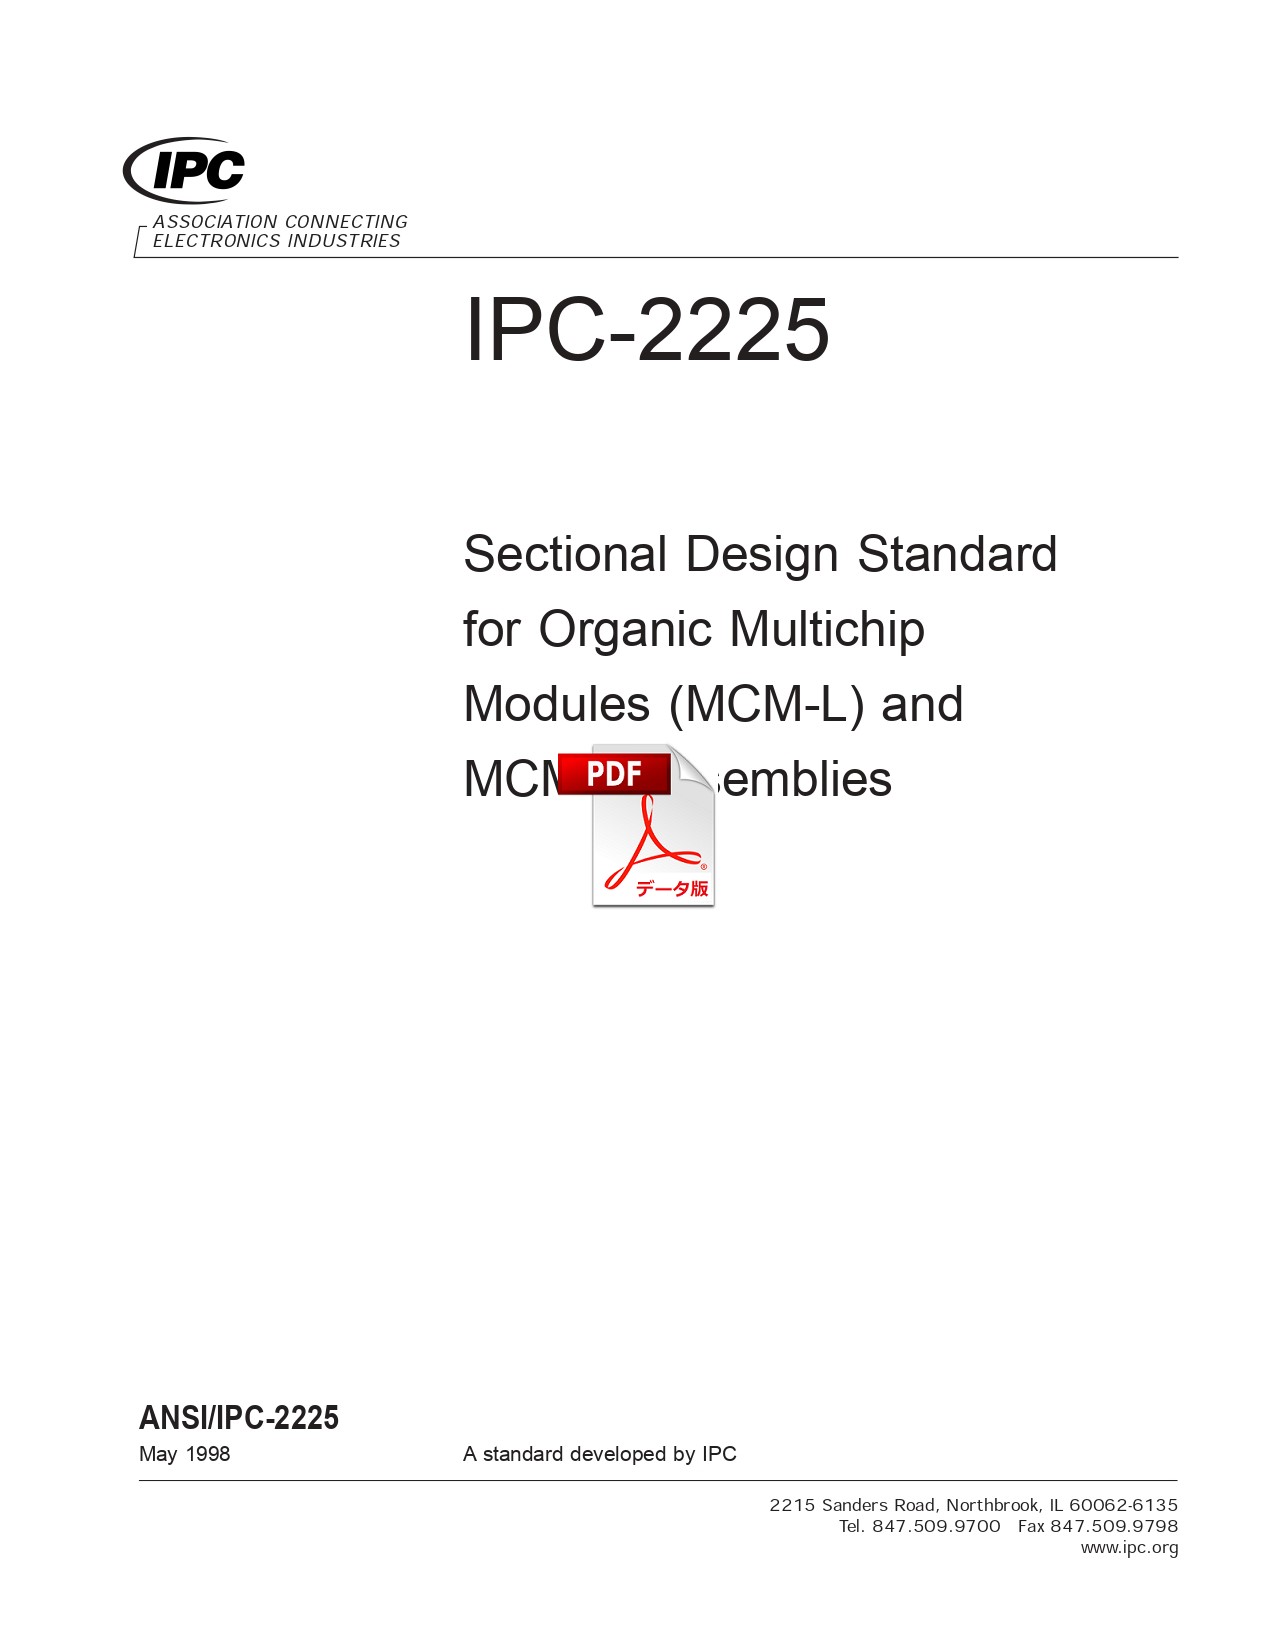 【英語版】IPC-2225: Sectional Design Standard for Organic Multichip Modules (MCM-L) and MCM-L Assemblies